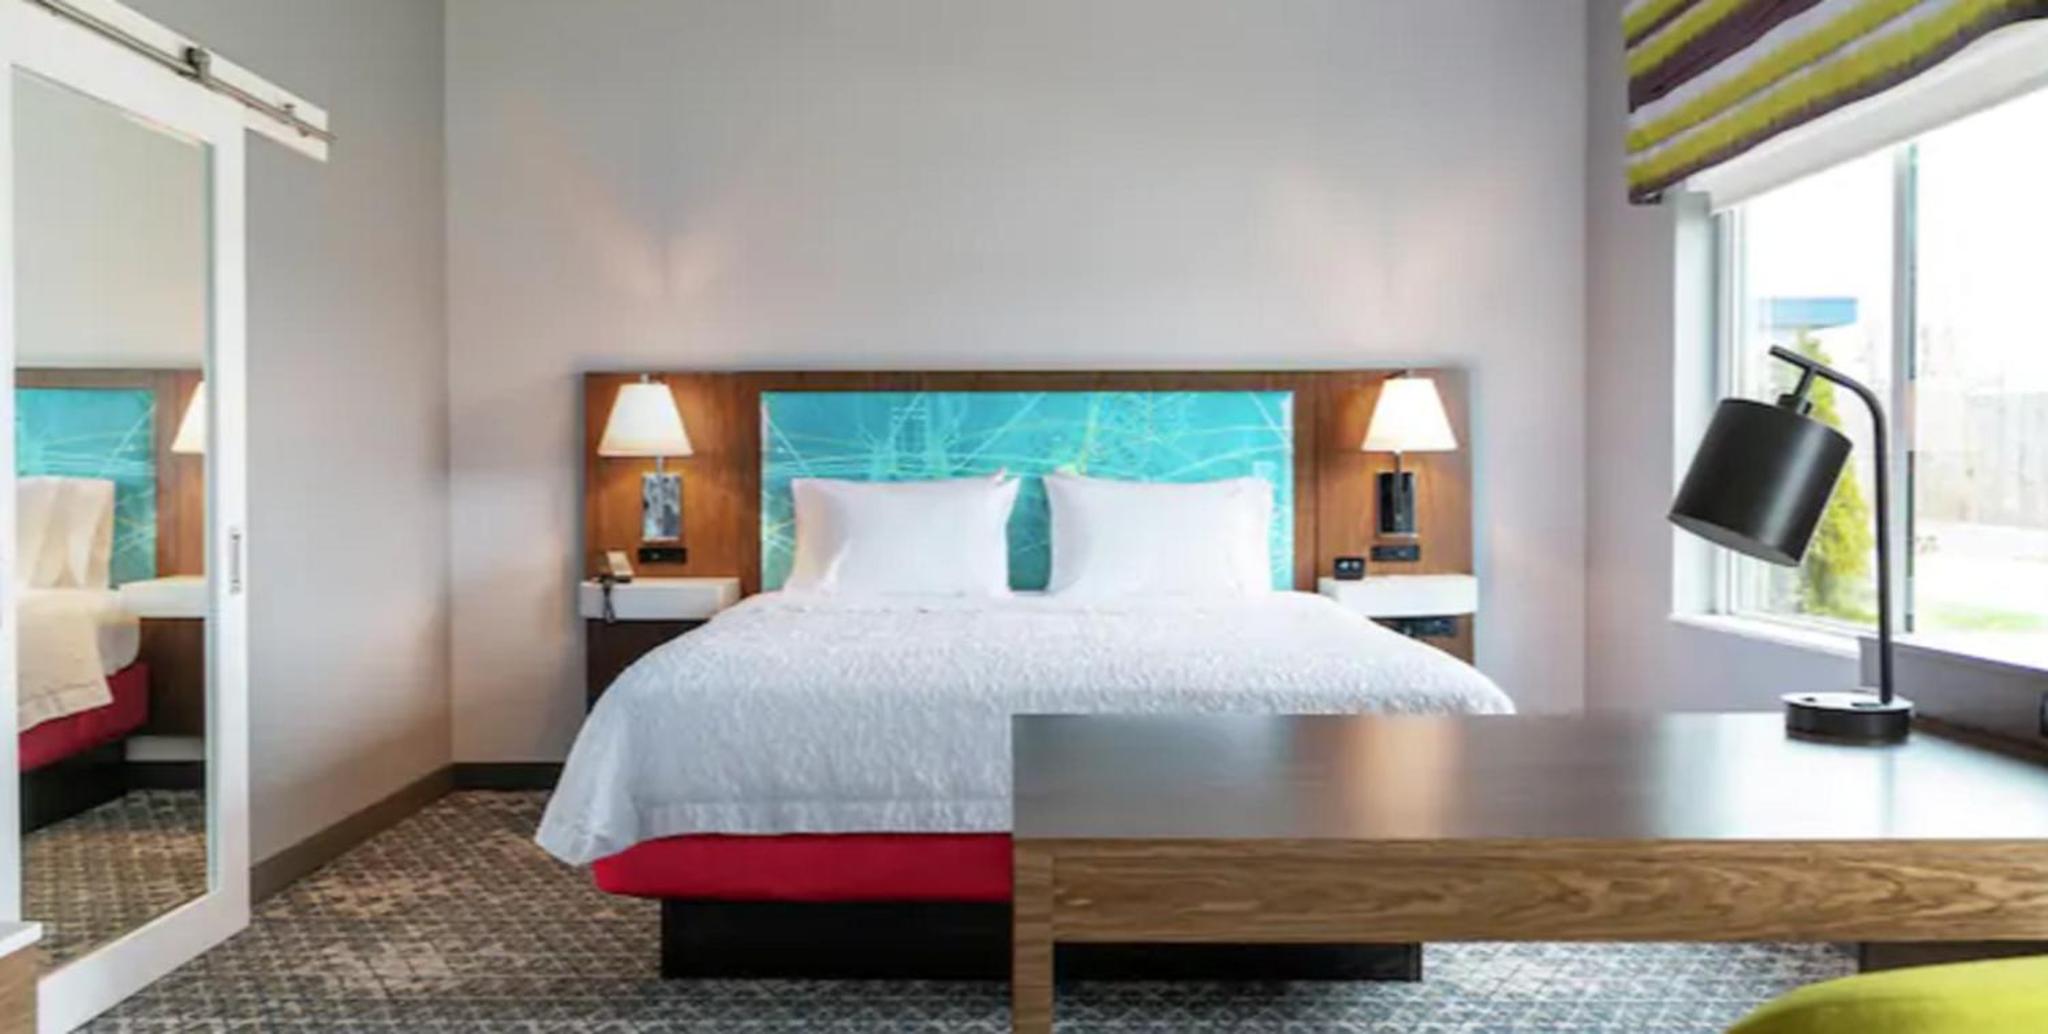 Hampton Inn & Suites Imperial Beach San Diego